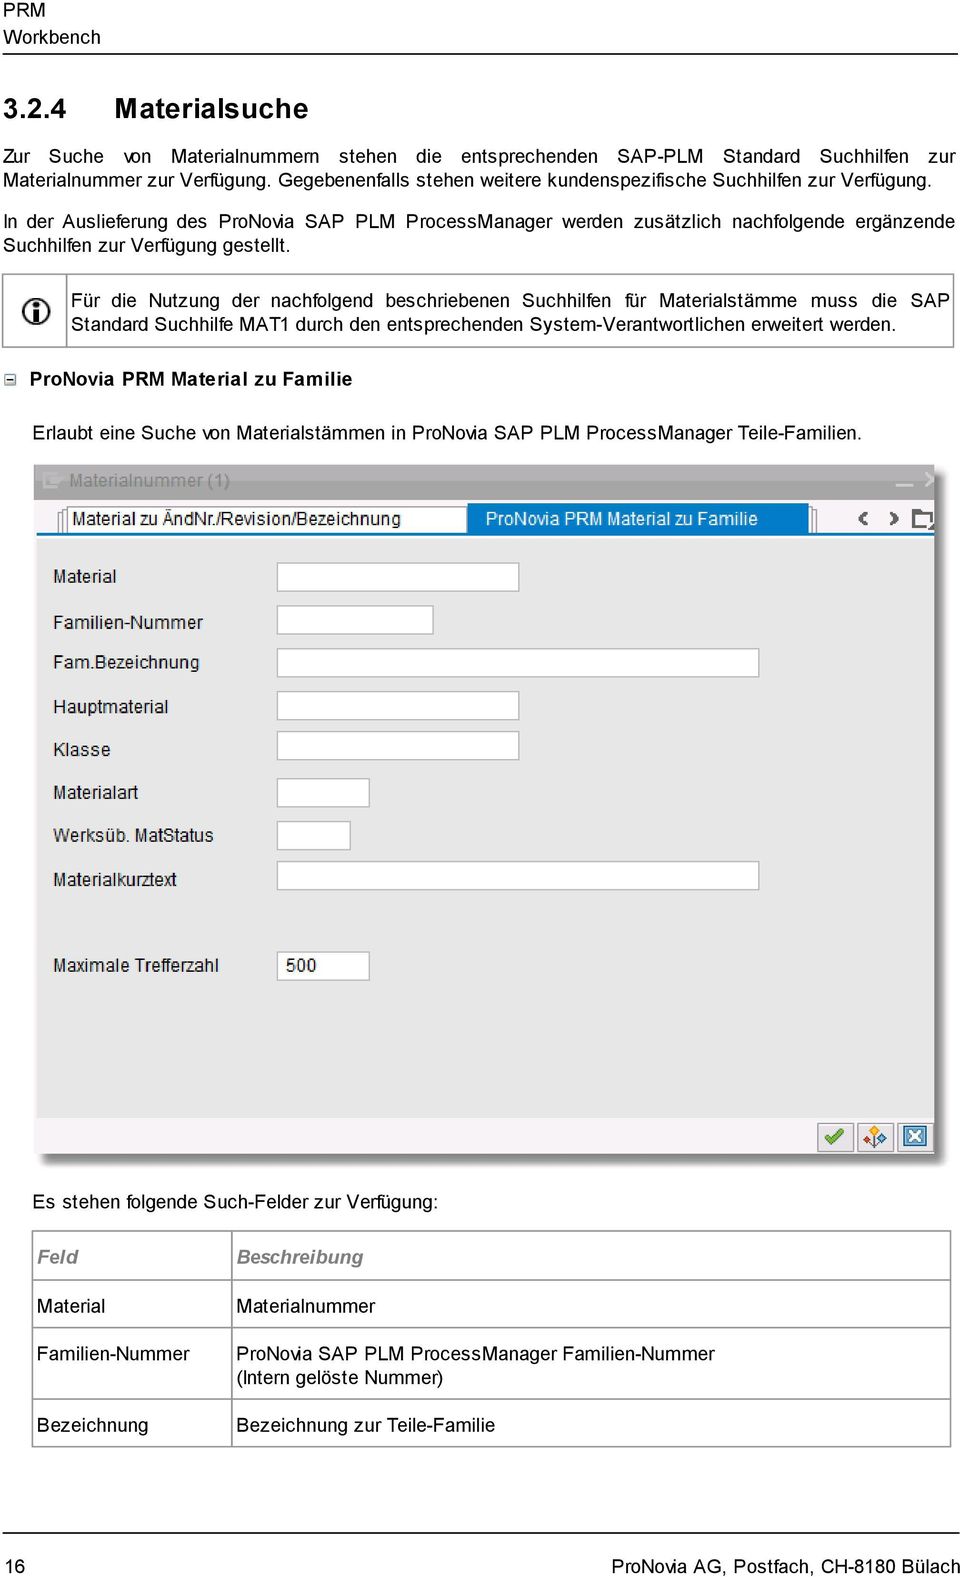 In der Auslieferung des ProNovia SAP PLM ProcessManager werden zusätzlich nachfolgende ergänzende Suchhilfen zur Verfügung gestellt.